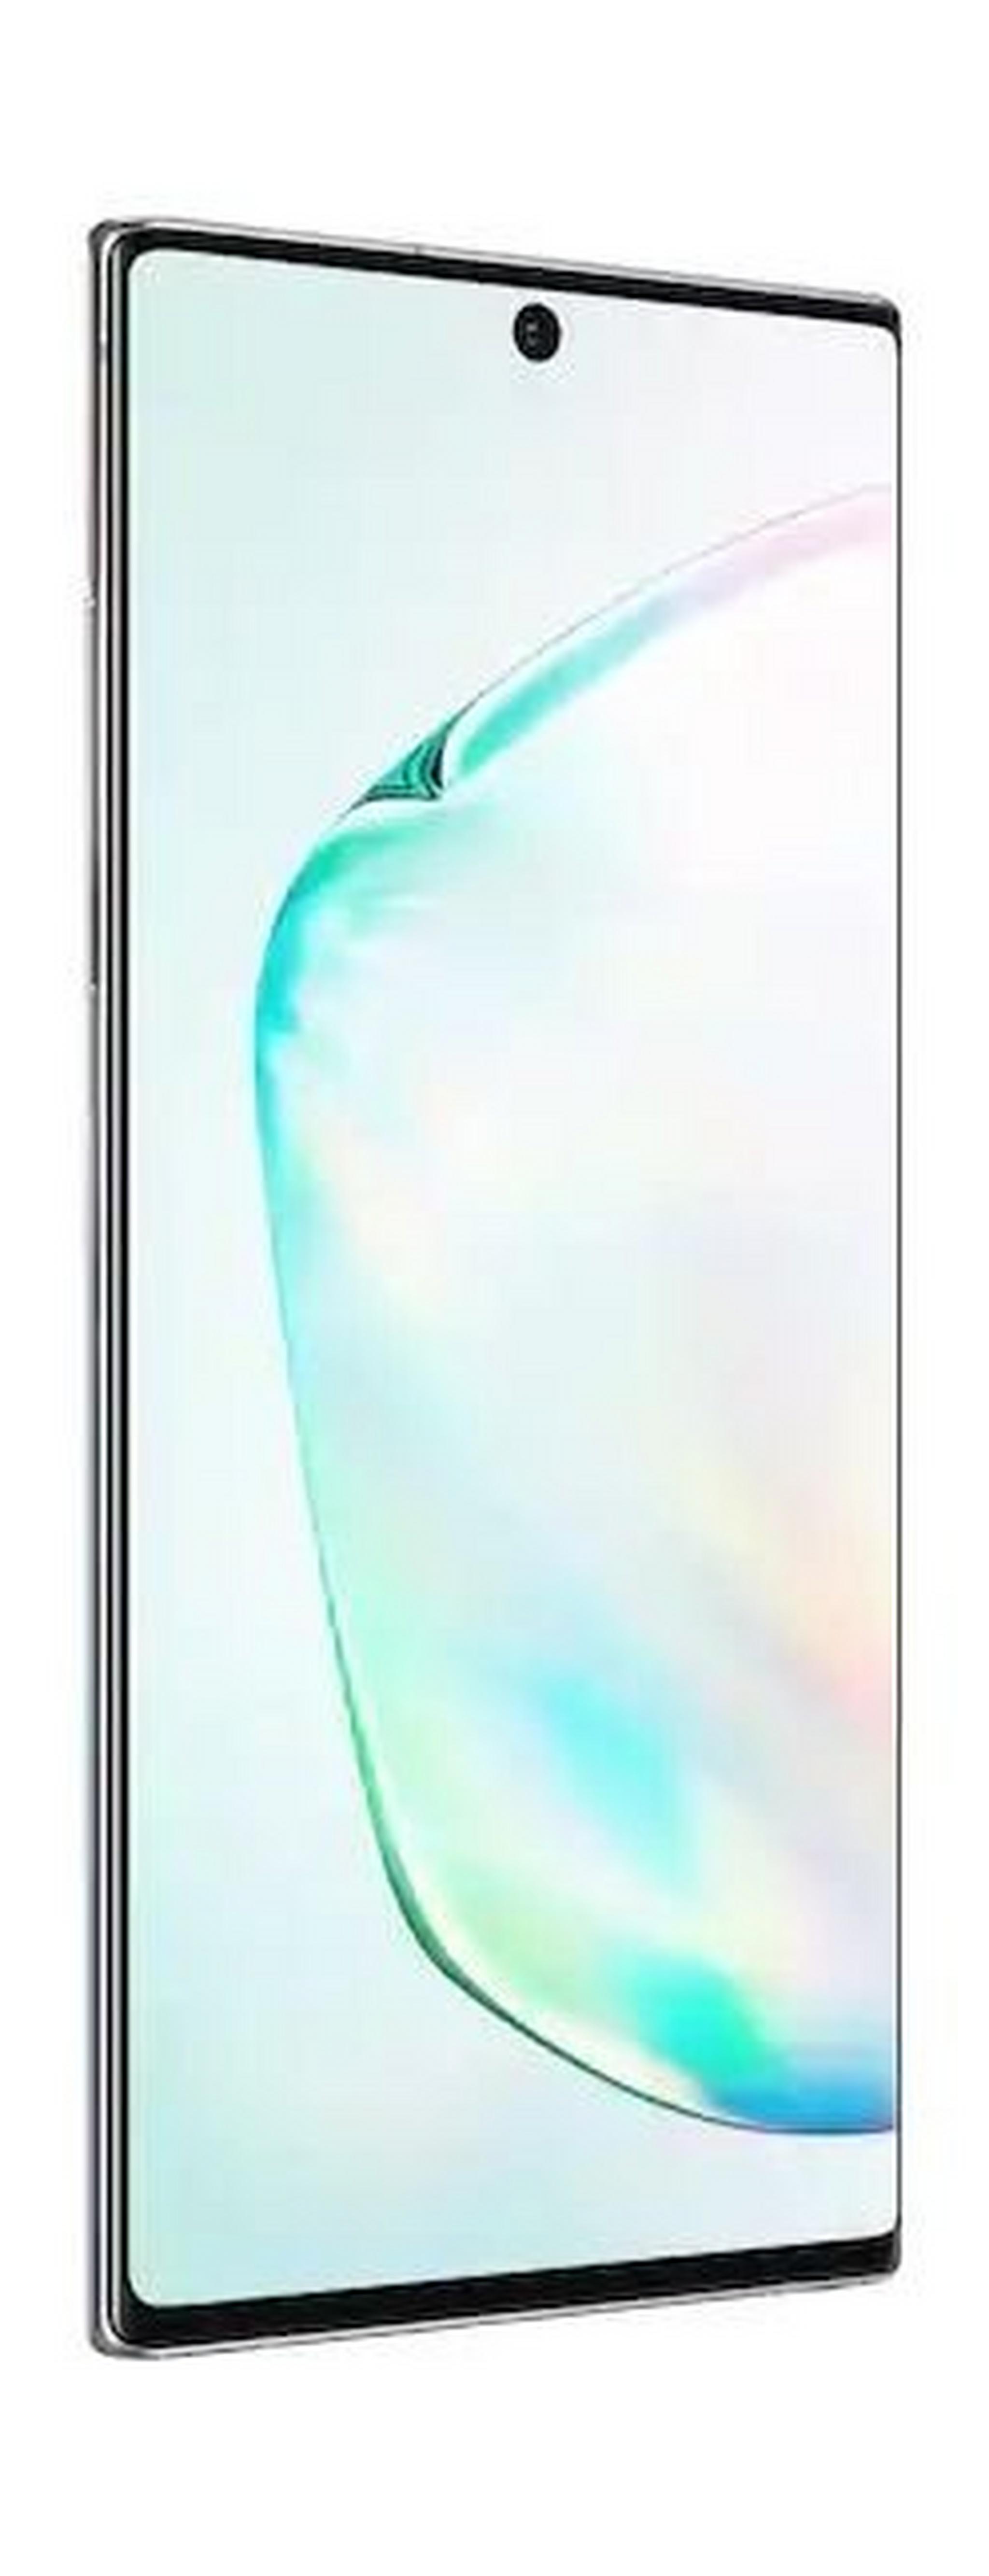 Samsung Galaxy Note 10 Plus 256GB Phone - Aura Glow